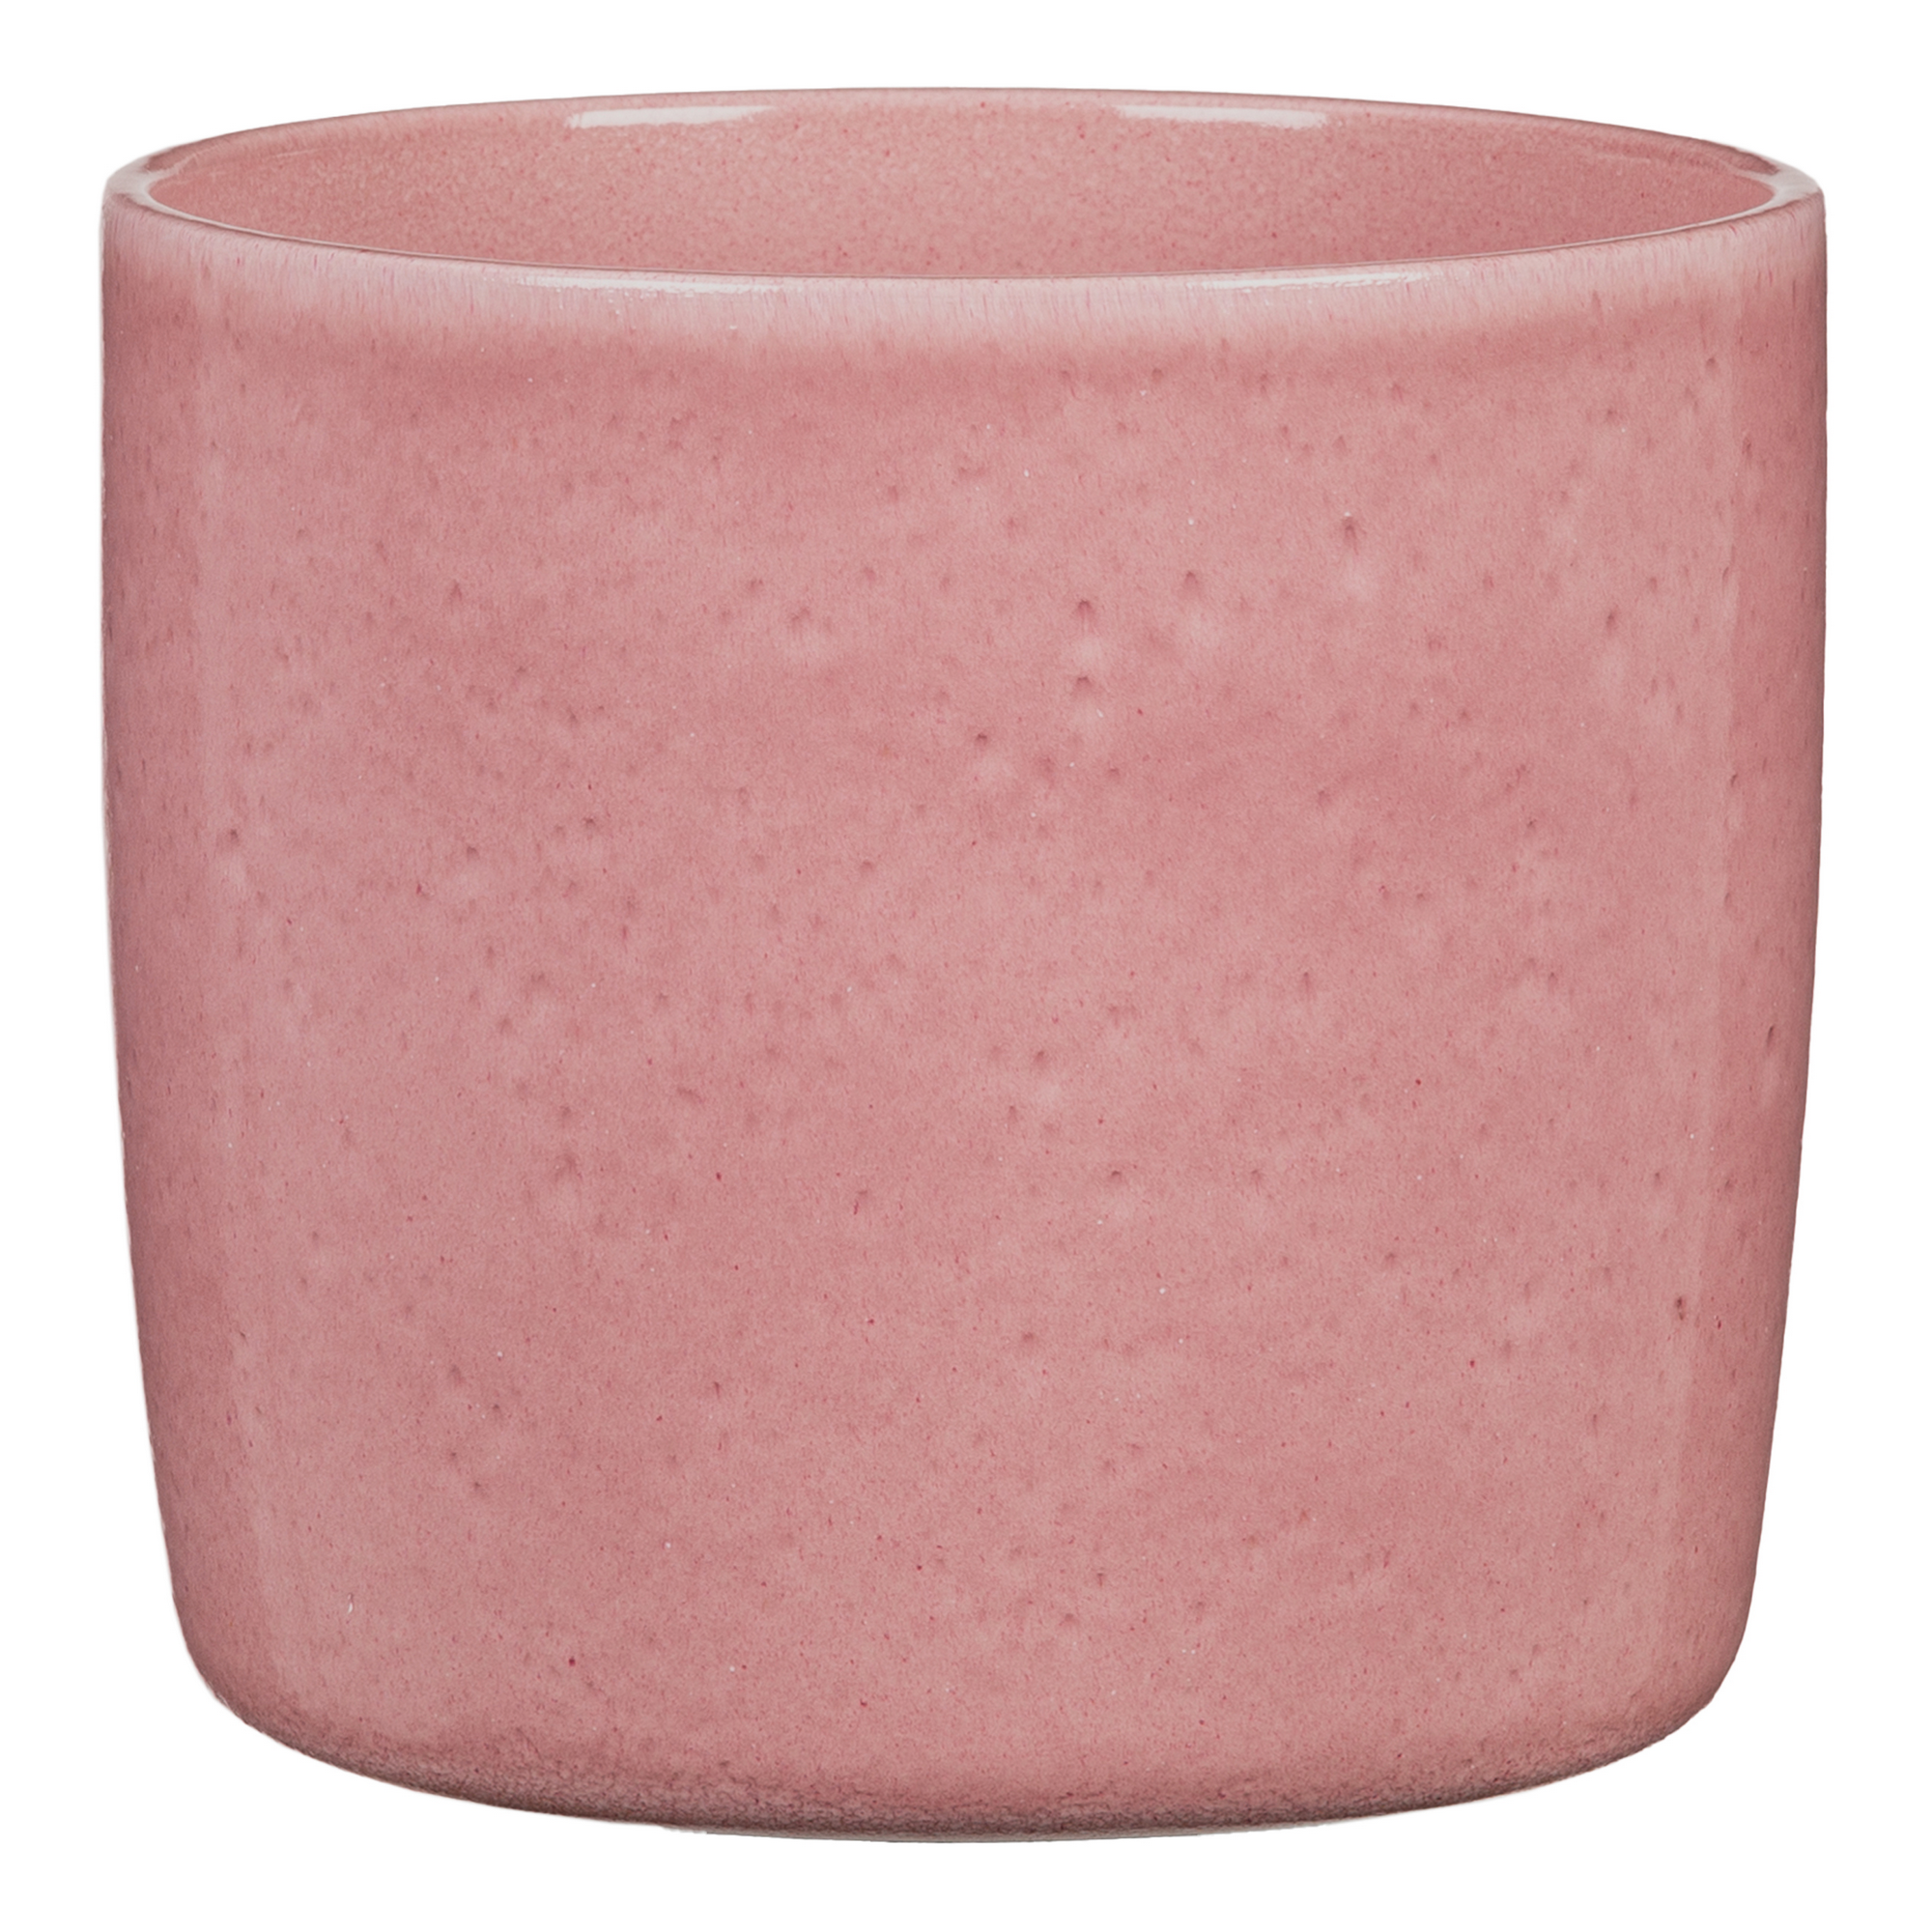 Übertopf 'Rosea 21/900' Keramik rosa Ø 21,2 x 19,3 cm + product picture